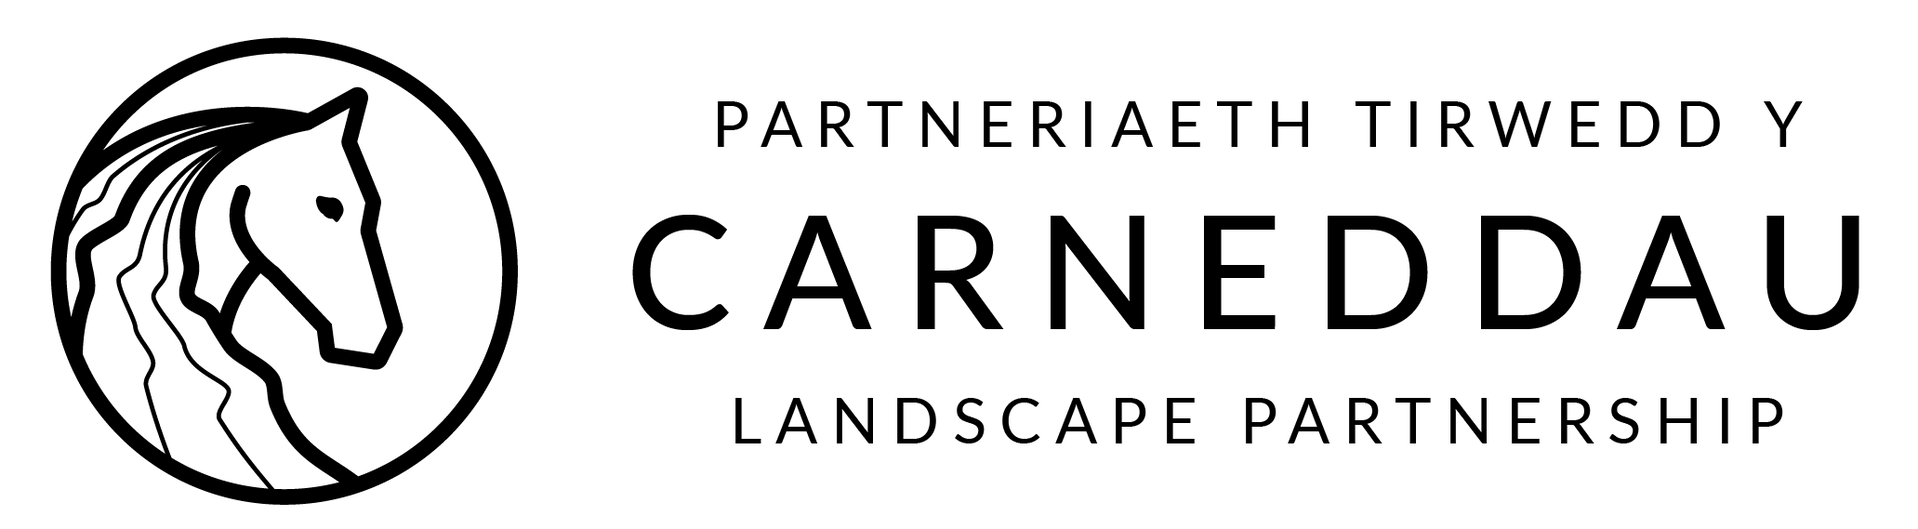 Carneddau logo